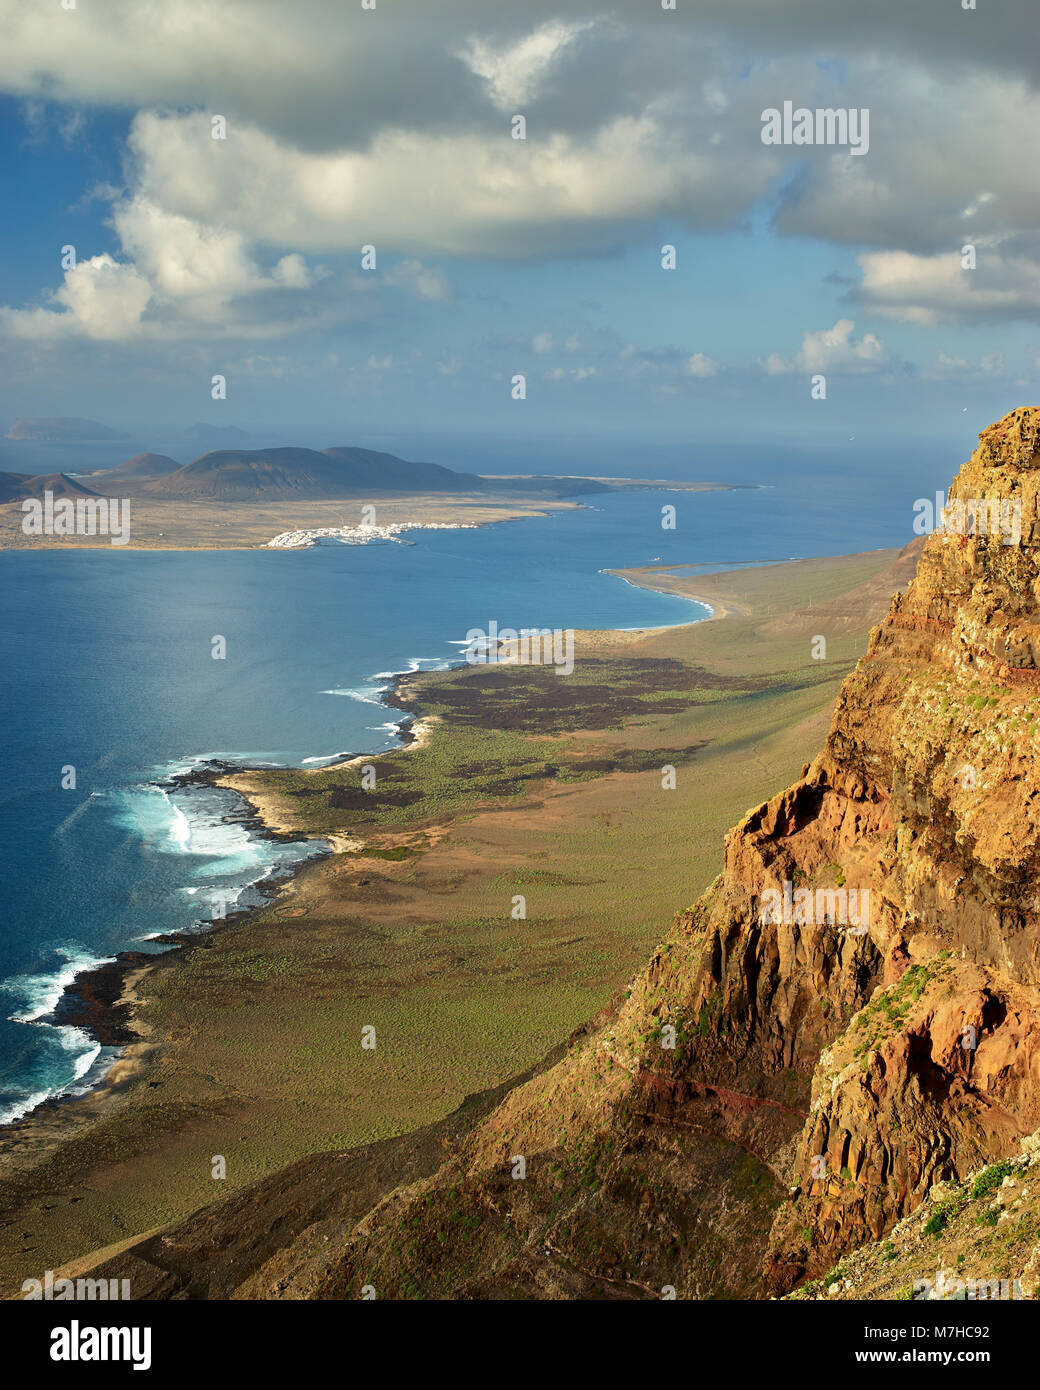 Isla Graciosa, parte dell'Arcipelago Chinijo, visto da vicino Guinate, Lanzarote, Isole Canarie, Spagna Foto Stock